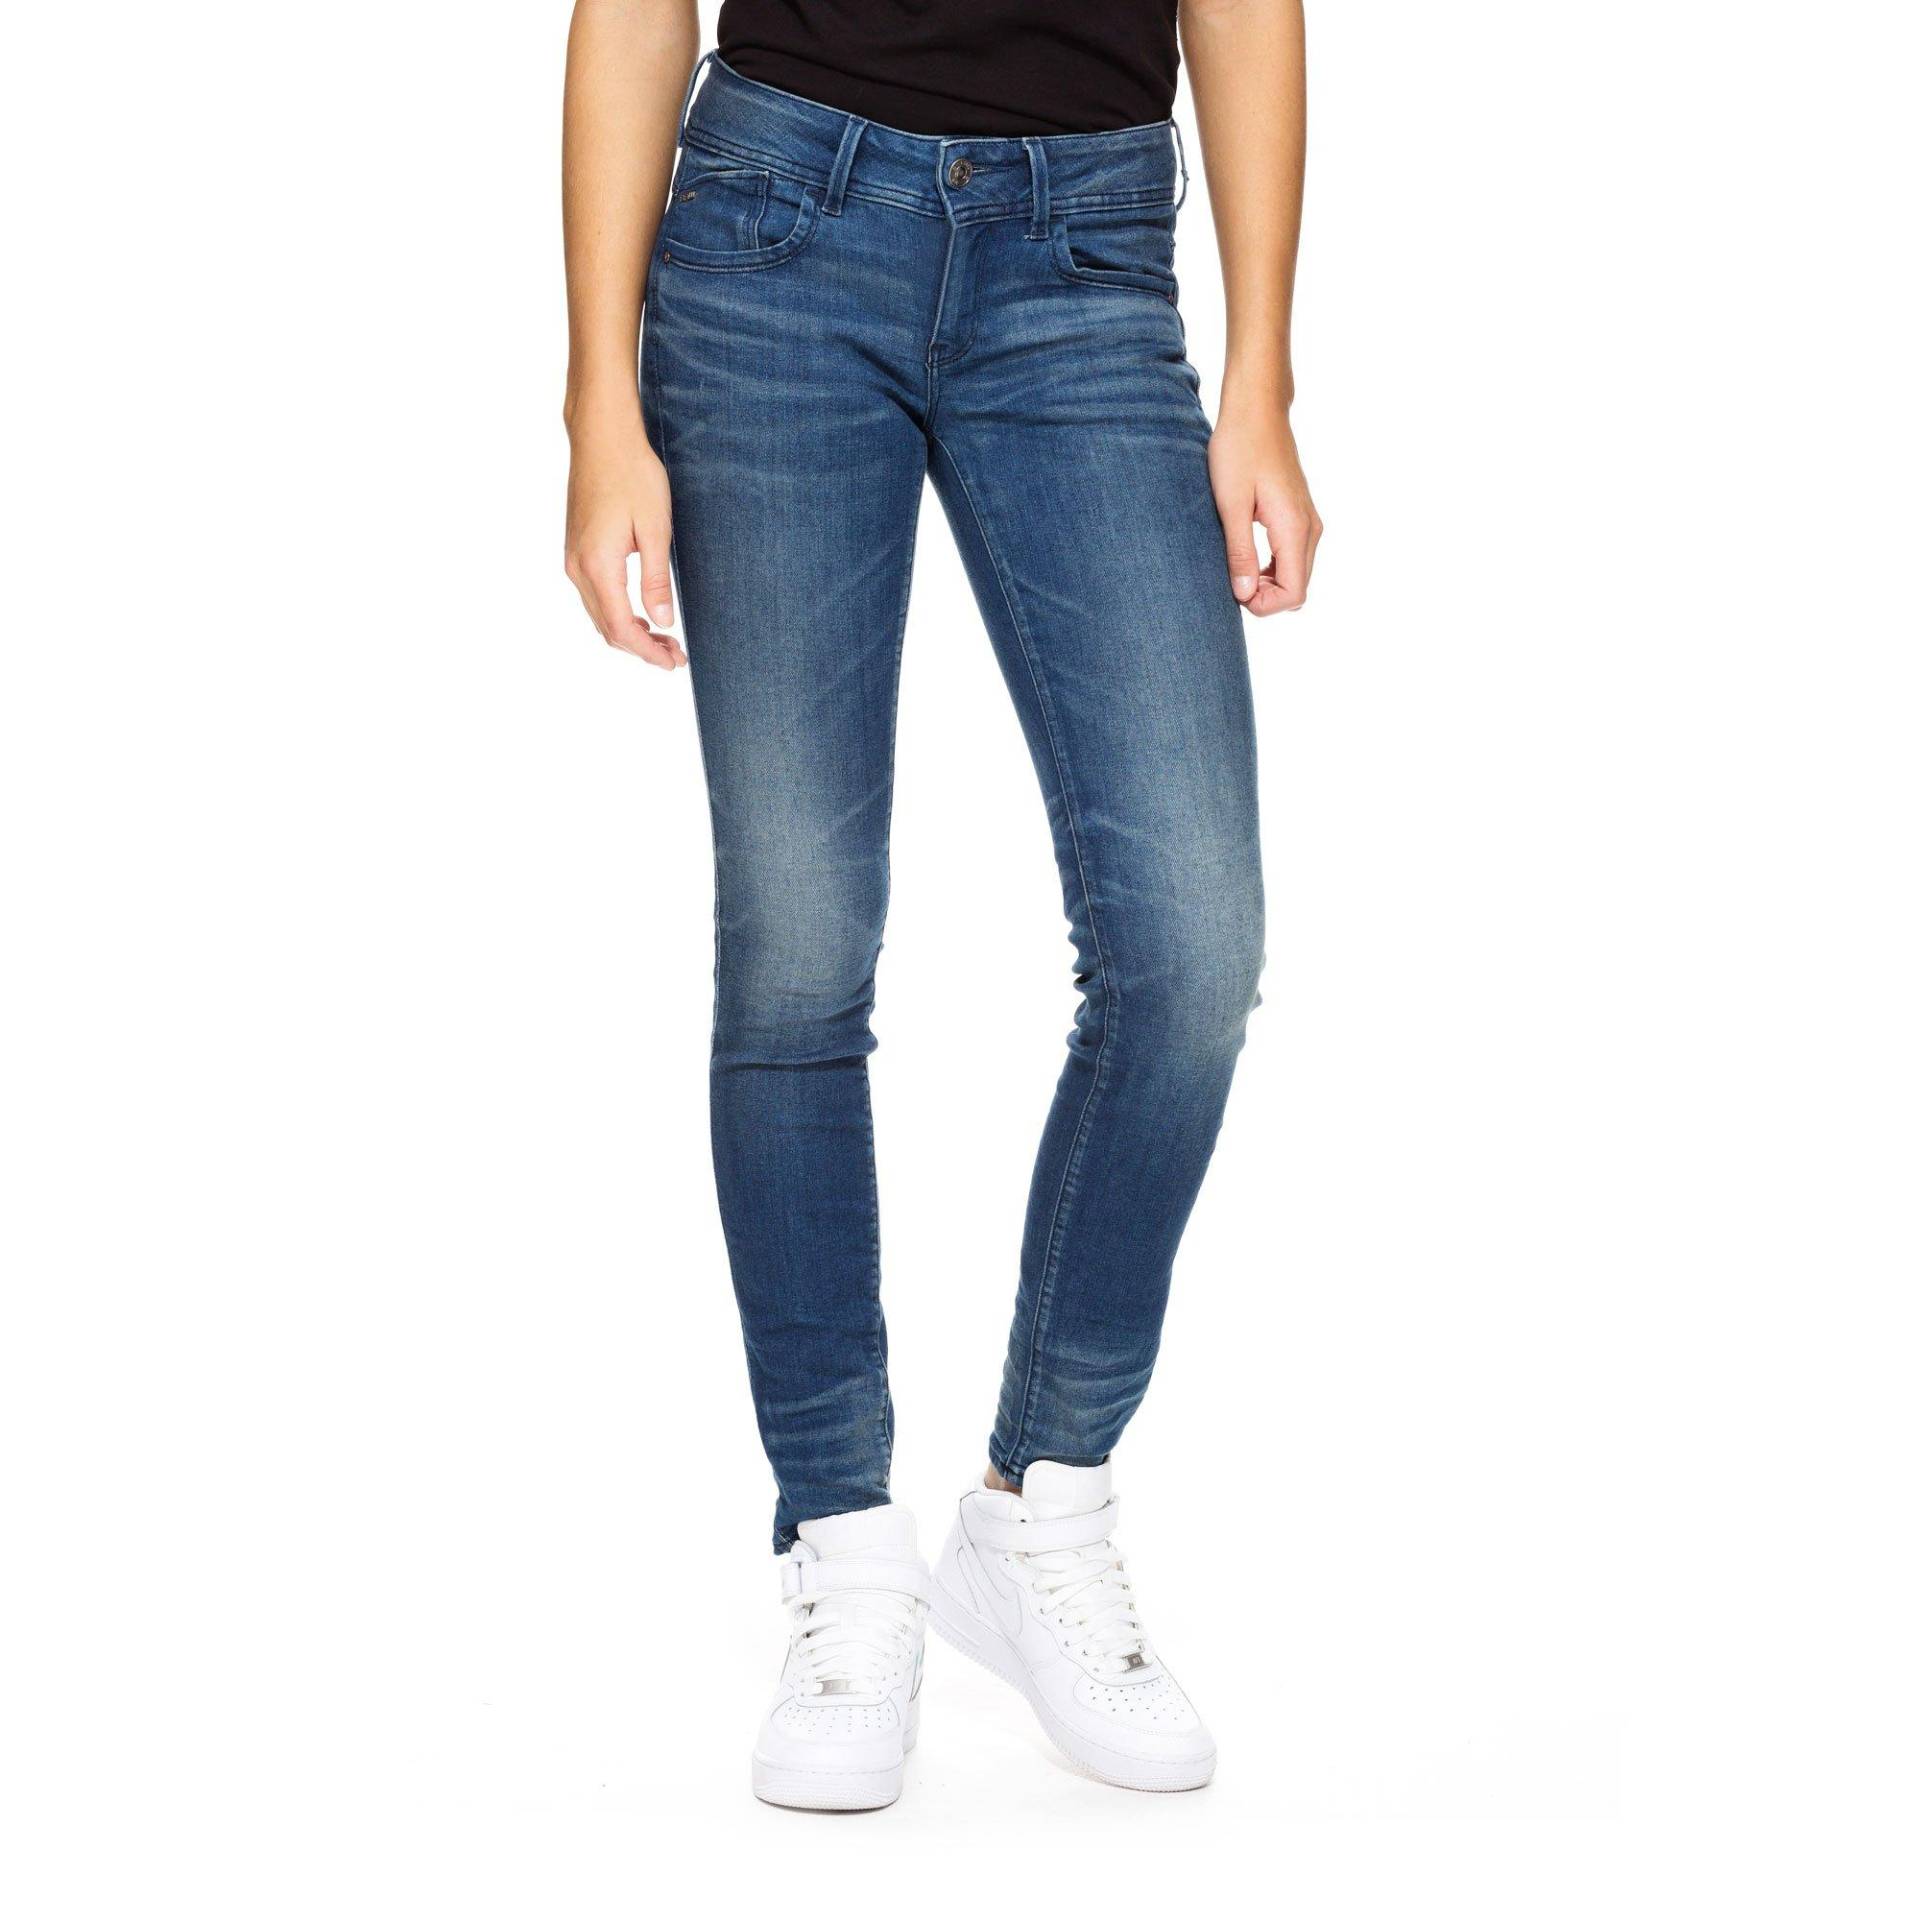 Jeans, Skinny Fit Damen Blau Denim L30/W29 von G-STAR